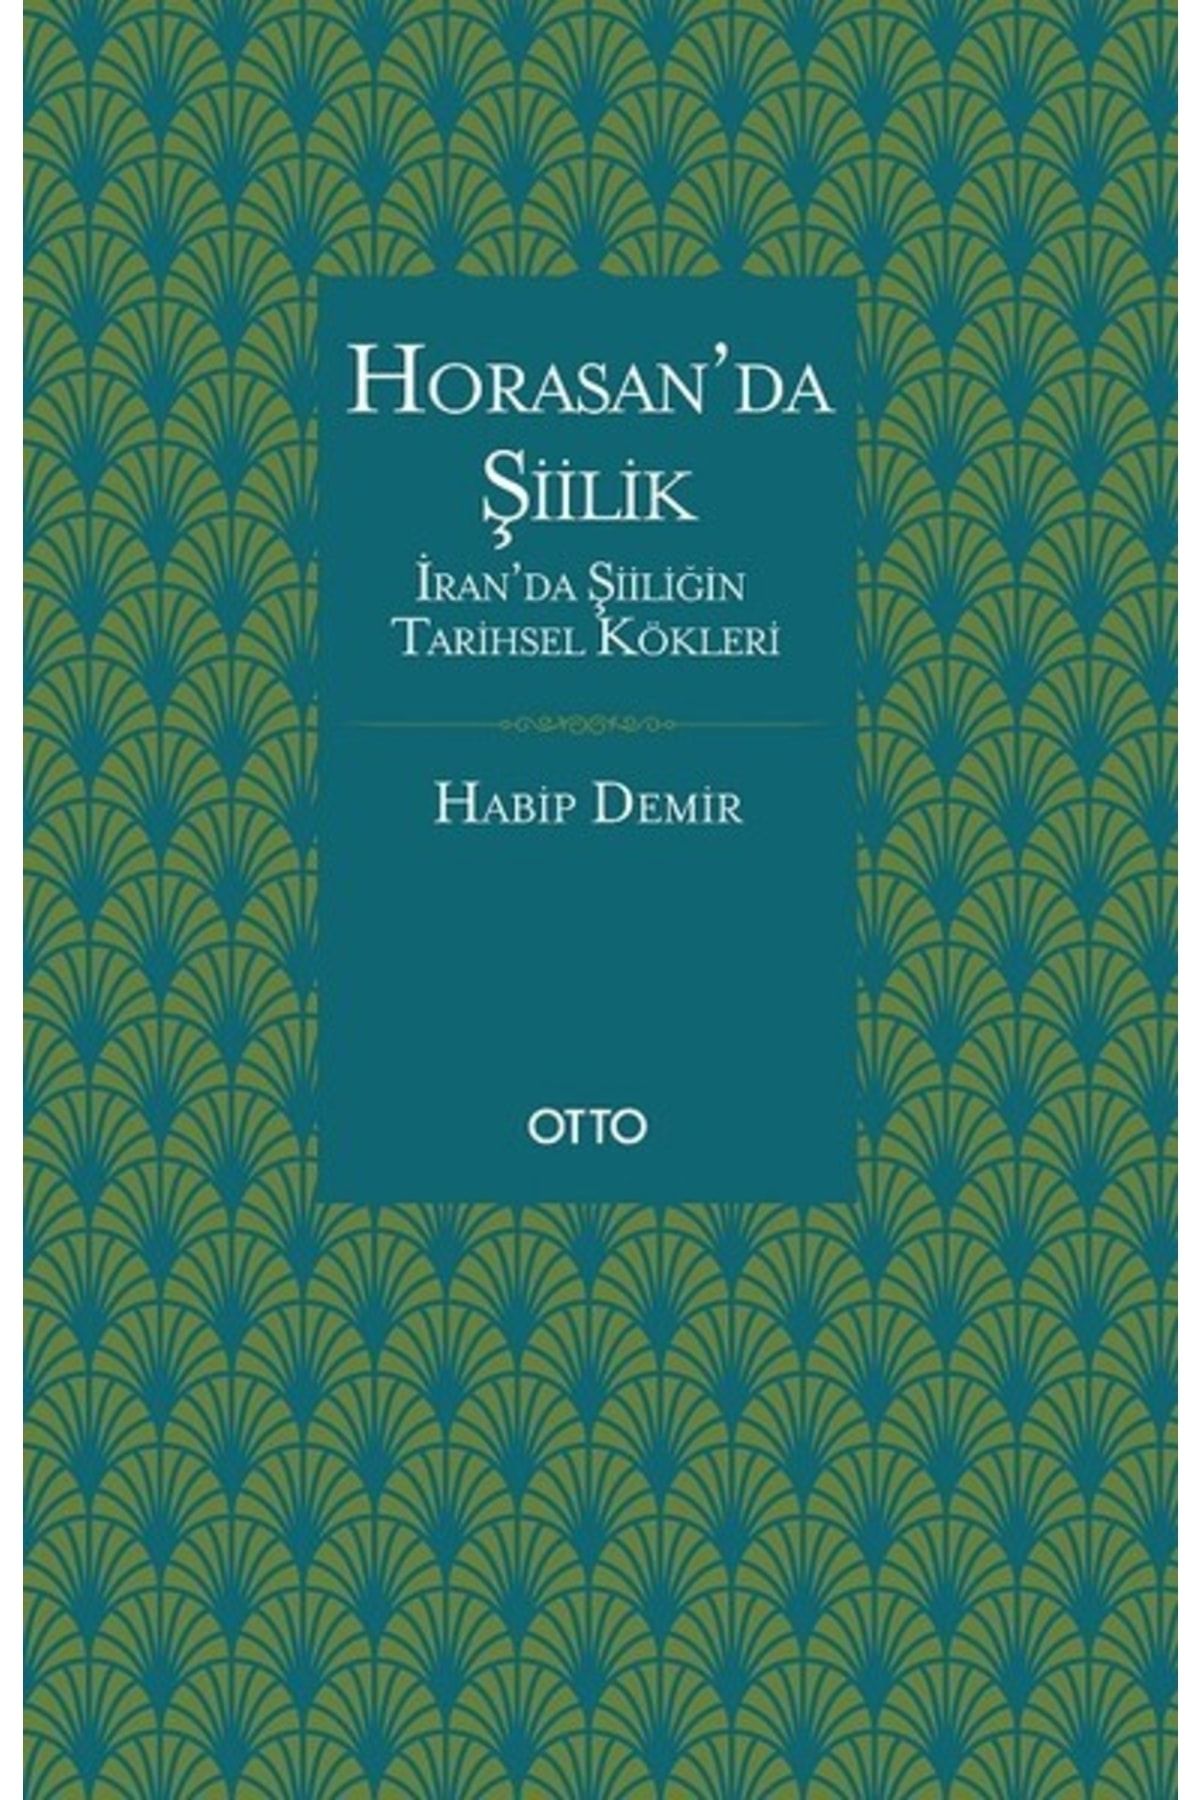 Otto Horasan'da Şiilik Habip Demir